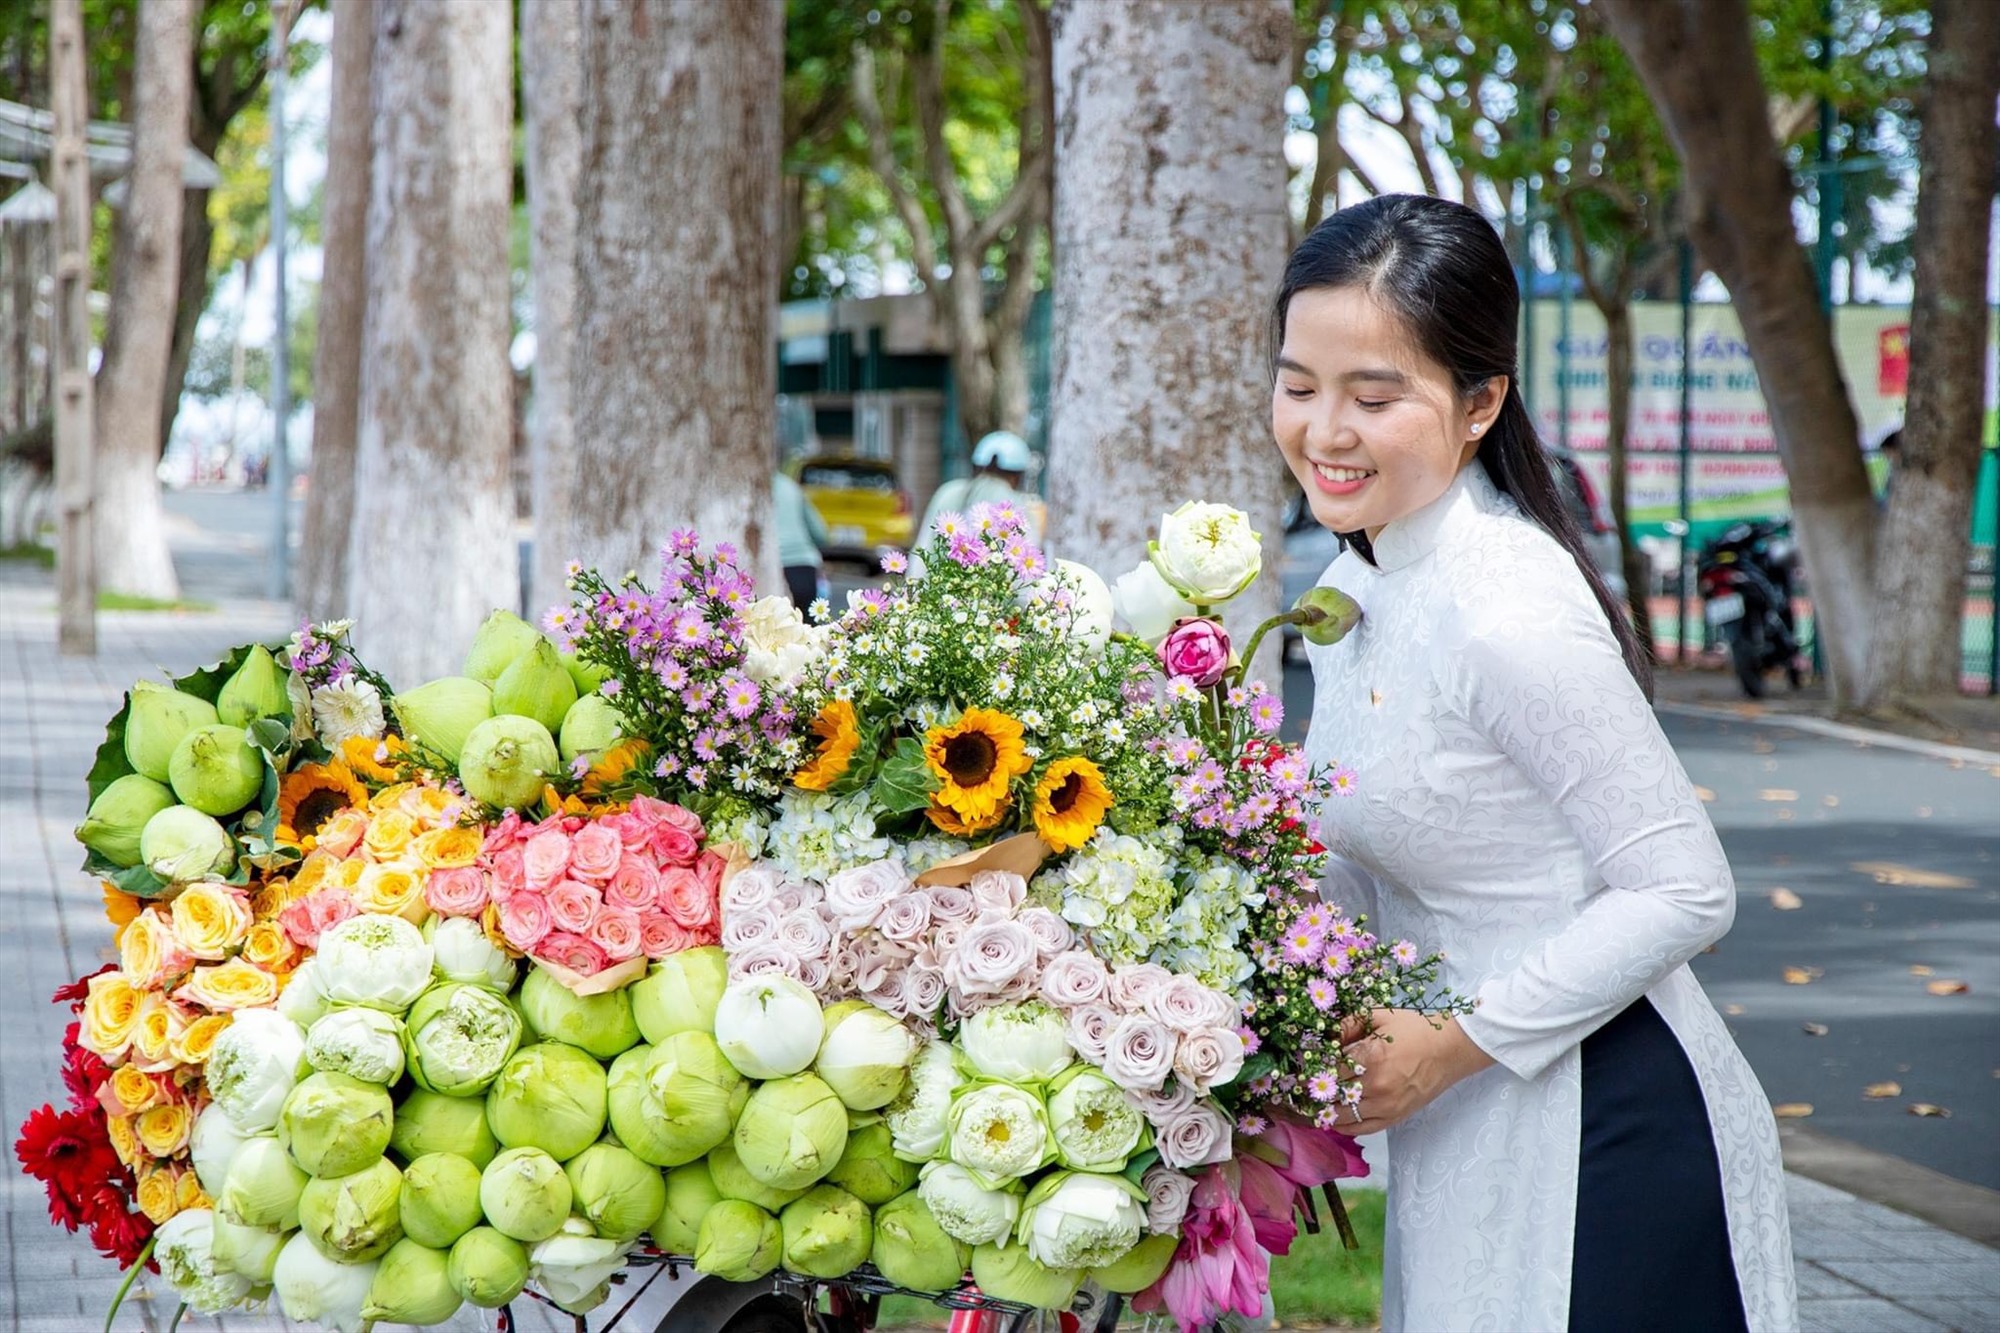 Thiếu nữ trong trang phục áo dài dịu dàng tạo dáng bên xe chở đầy hoa ở bờ hồ Nguyễn Du. Ảnh: Kim Luận